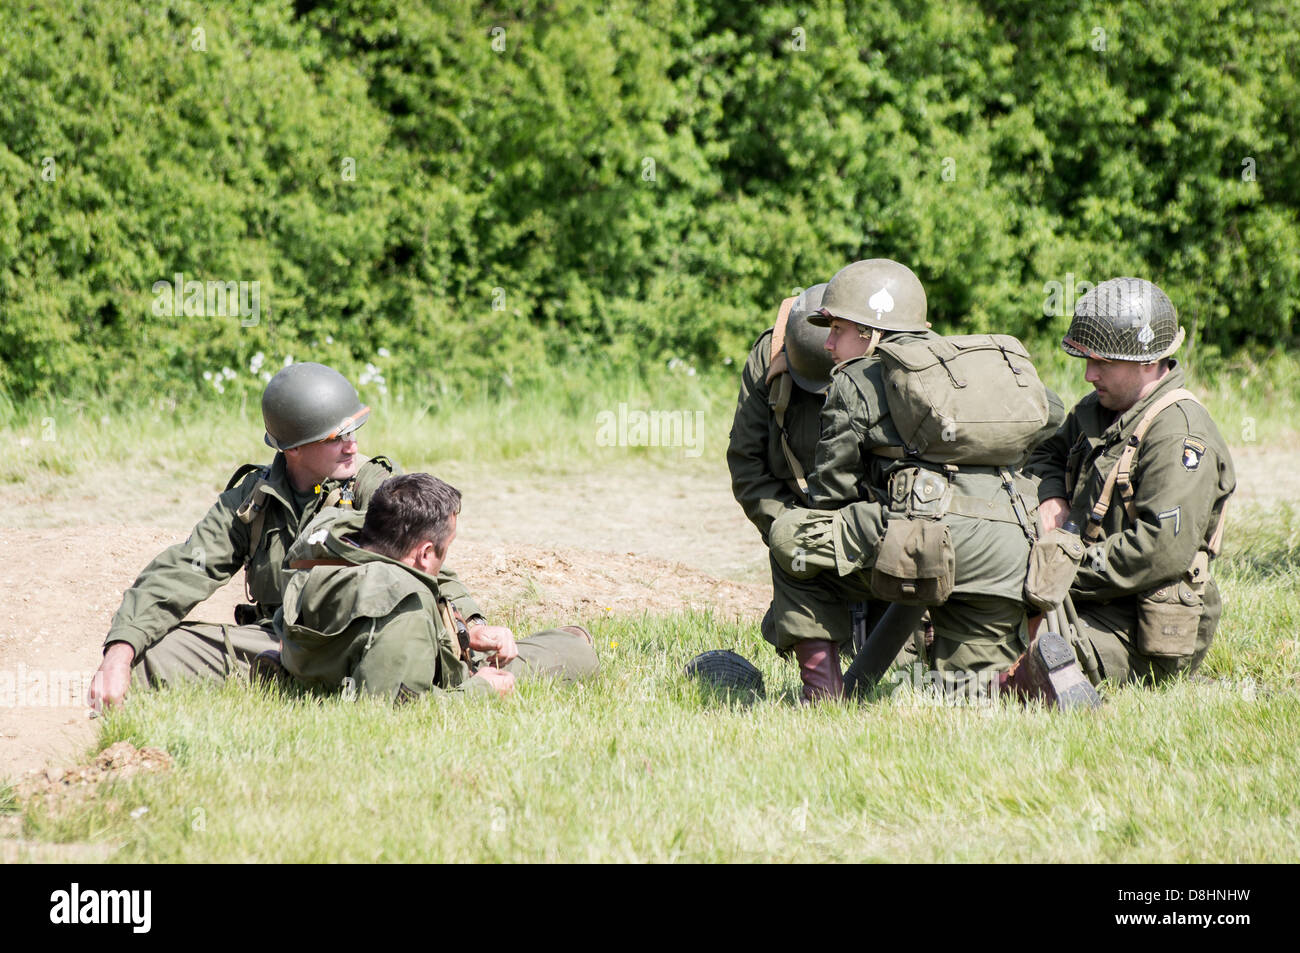 Overlord, D-Day rievocazione a Denmead 2013. Un gruppo di soldati americani seduti e parlare mentre vi rilassate. Foto Stock